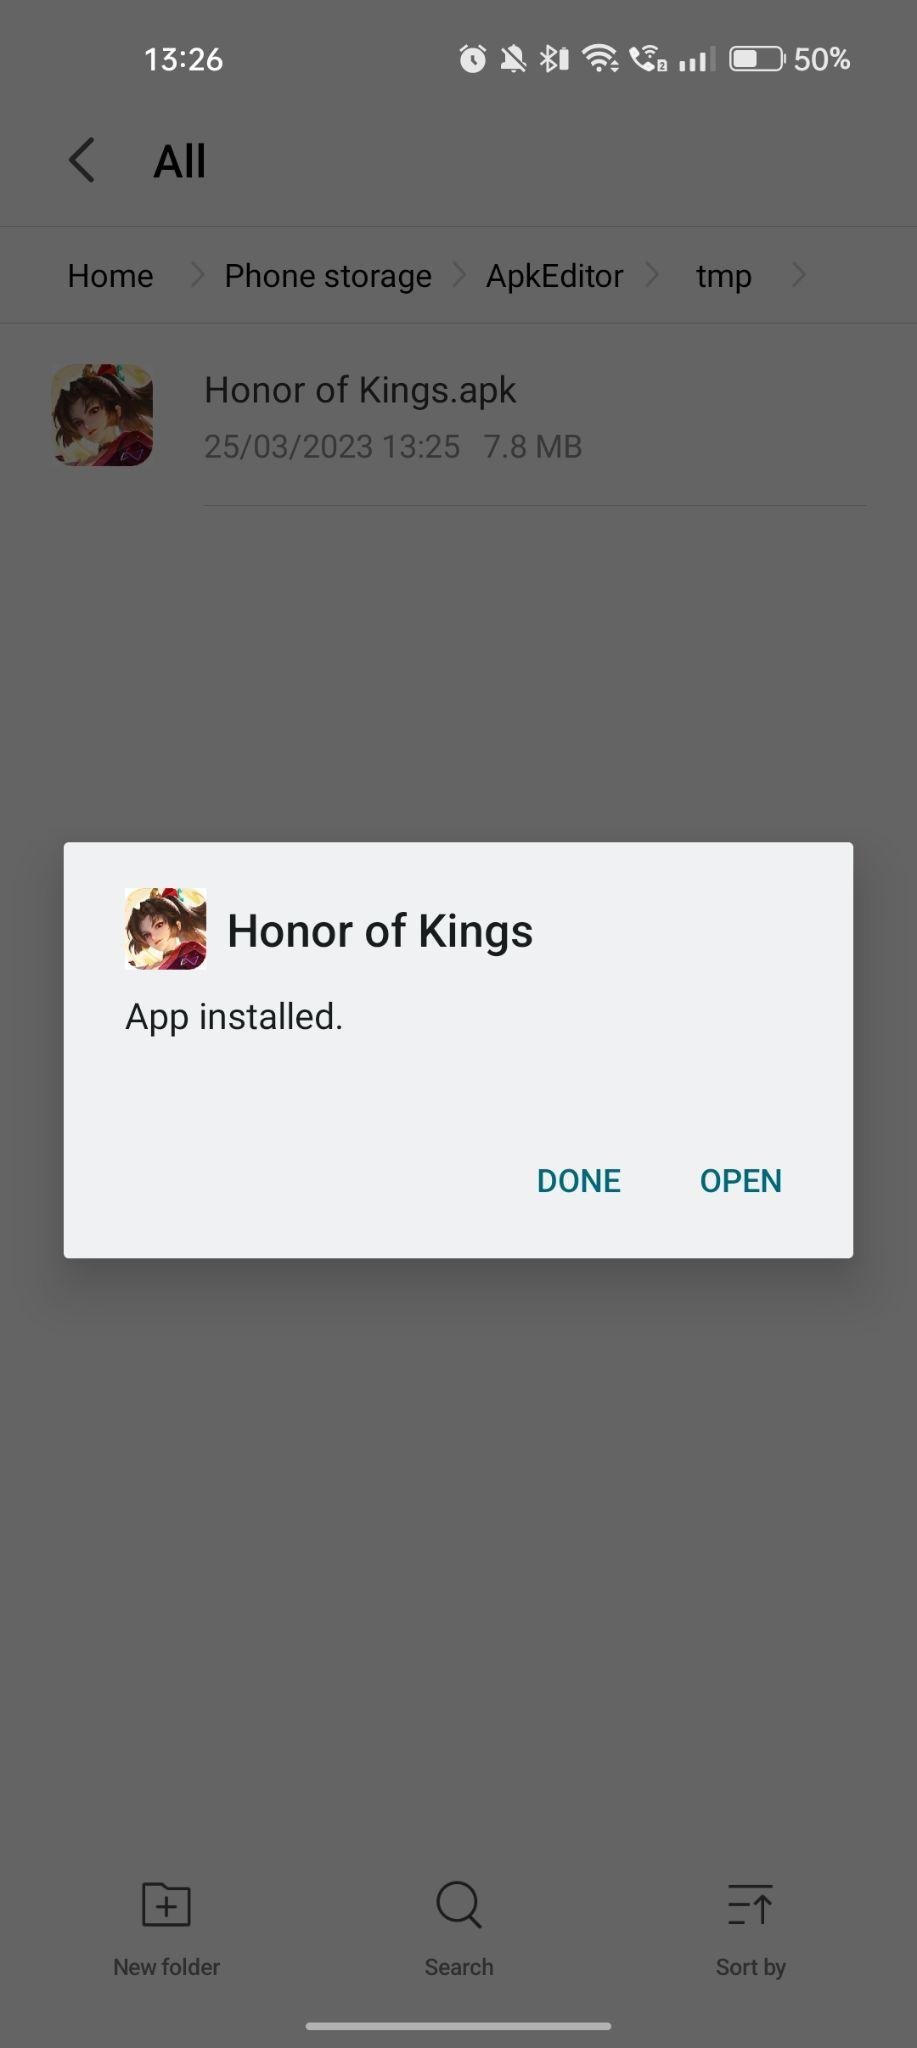 Honor of Kings apk installed